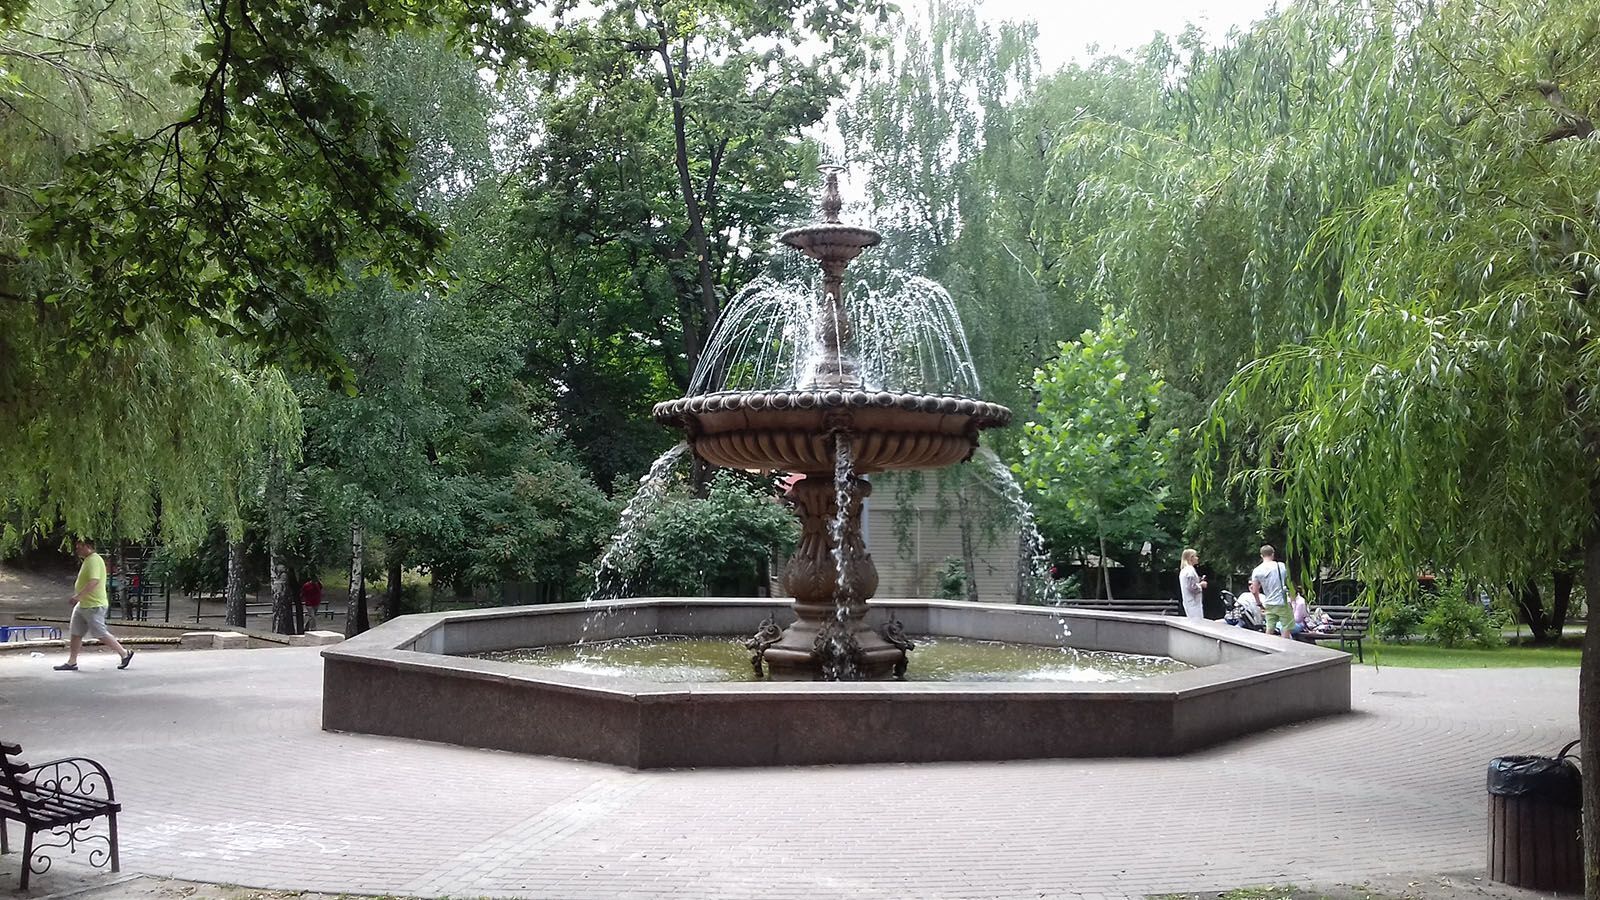 В Киеве в начале ХХ века на Софийской площади стоял один из семи фонтанов Термена. Уникальное фото